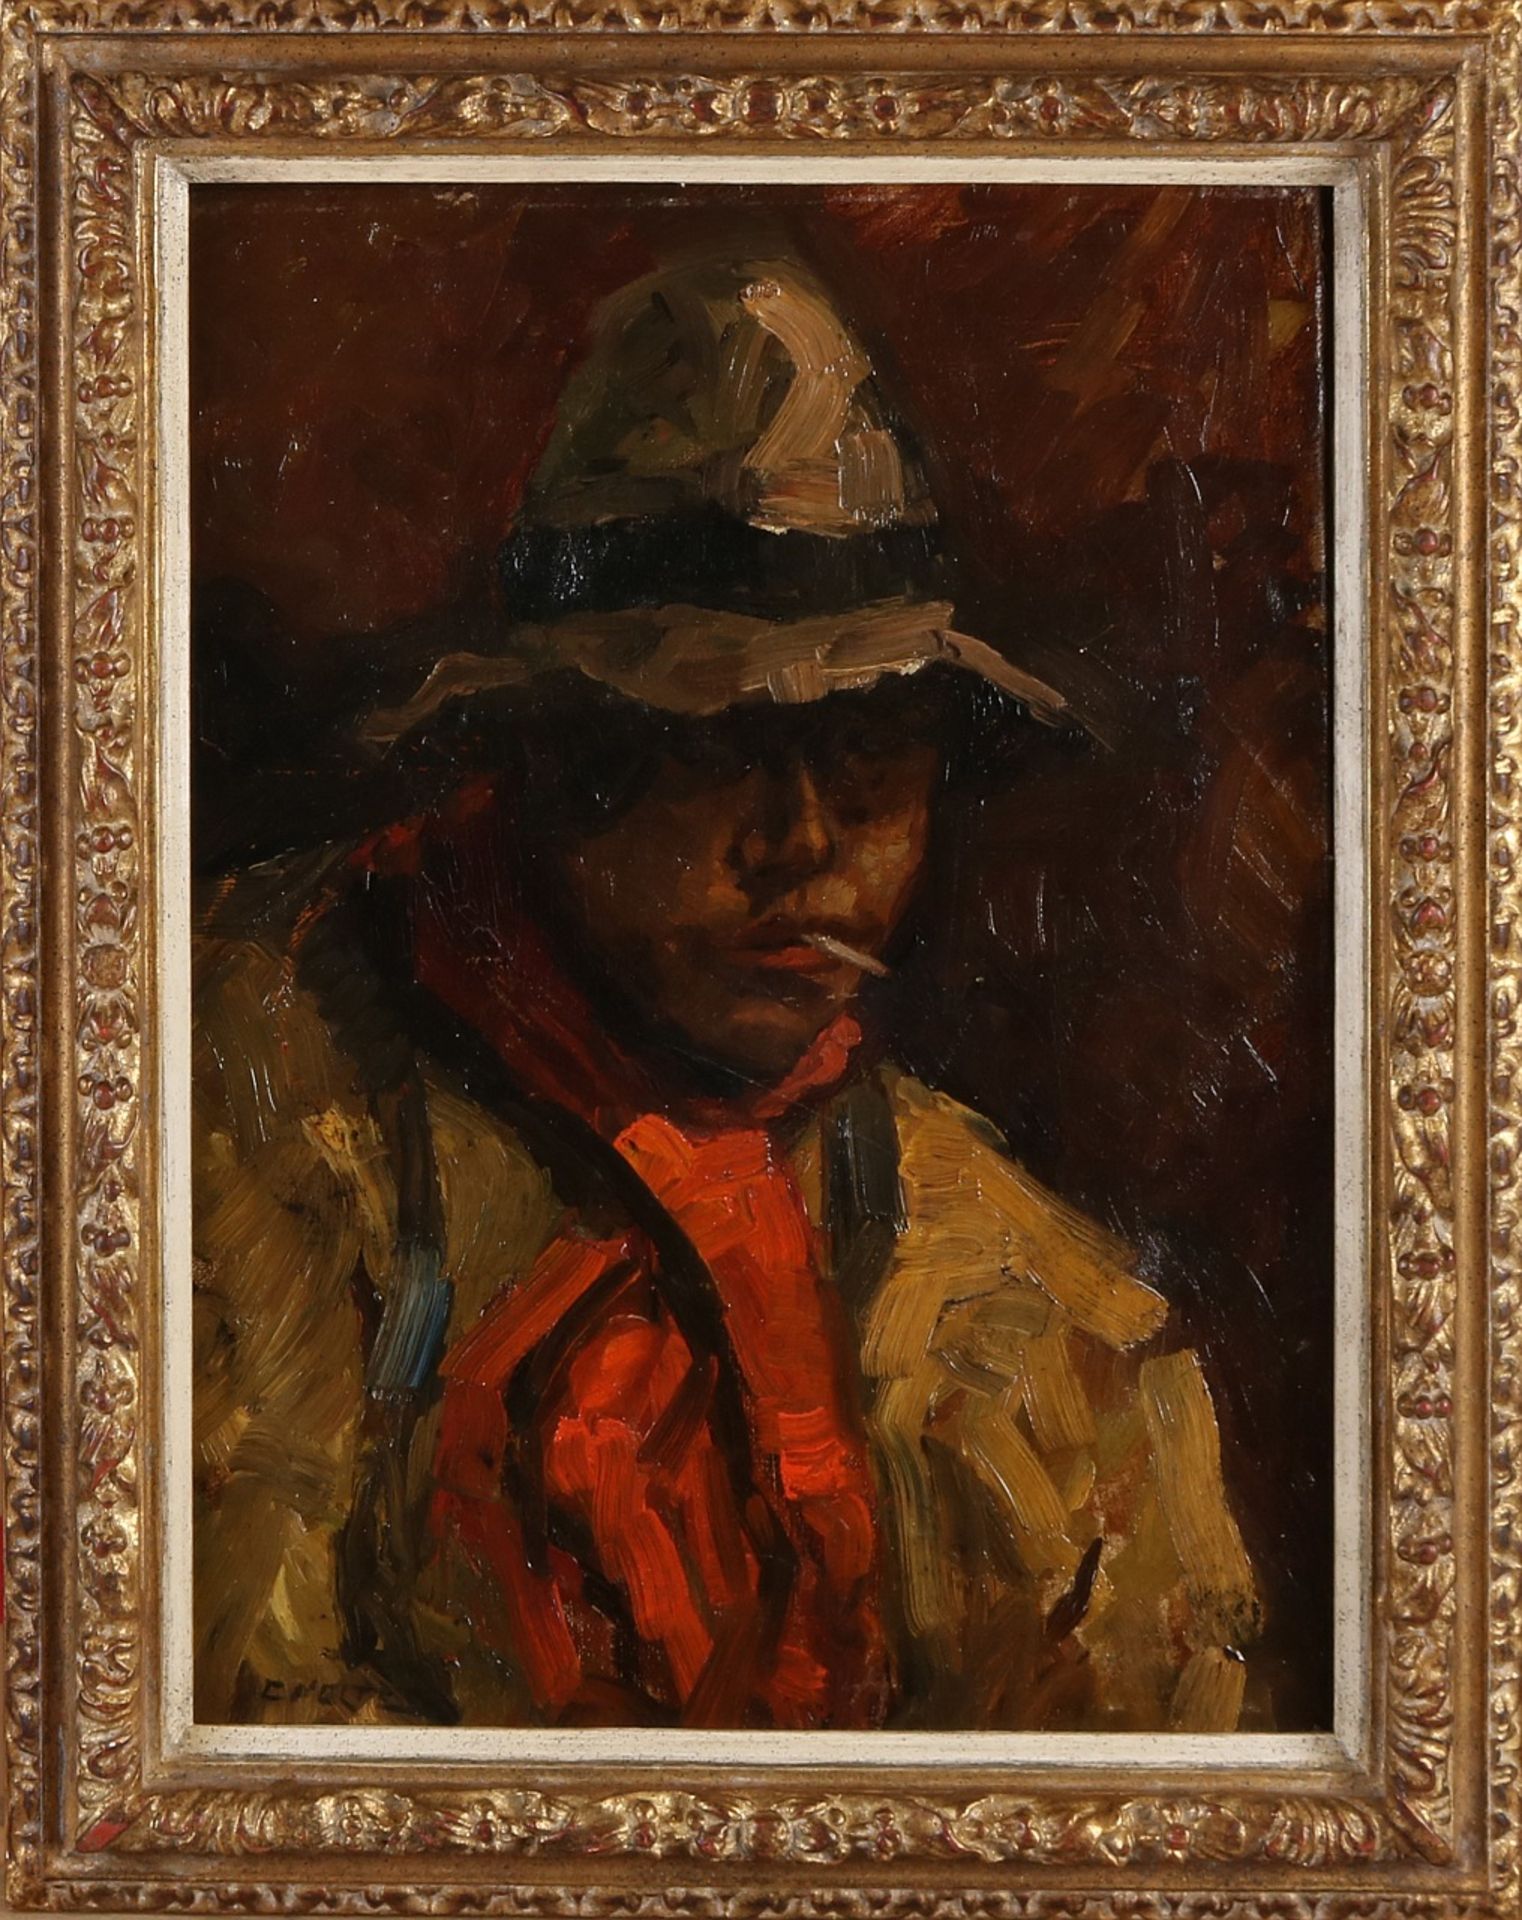 Cor Noltee. 1903 - 1967. Junge mit Zahnstocher. Öl auf Leinen. Abmessungen: H 40 x B 30 cm. In